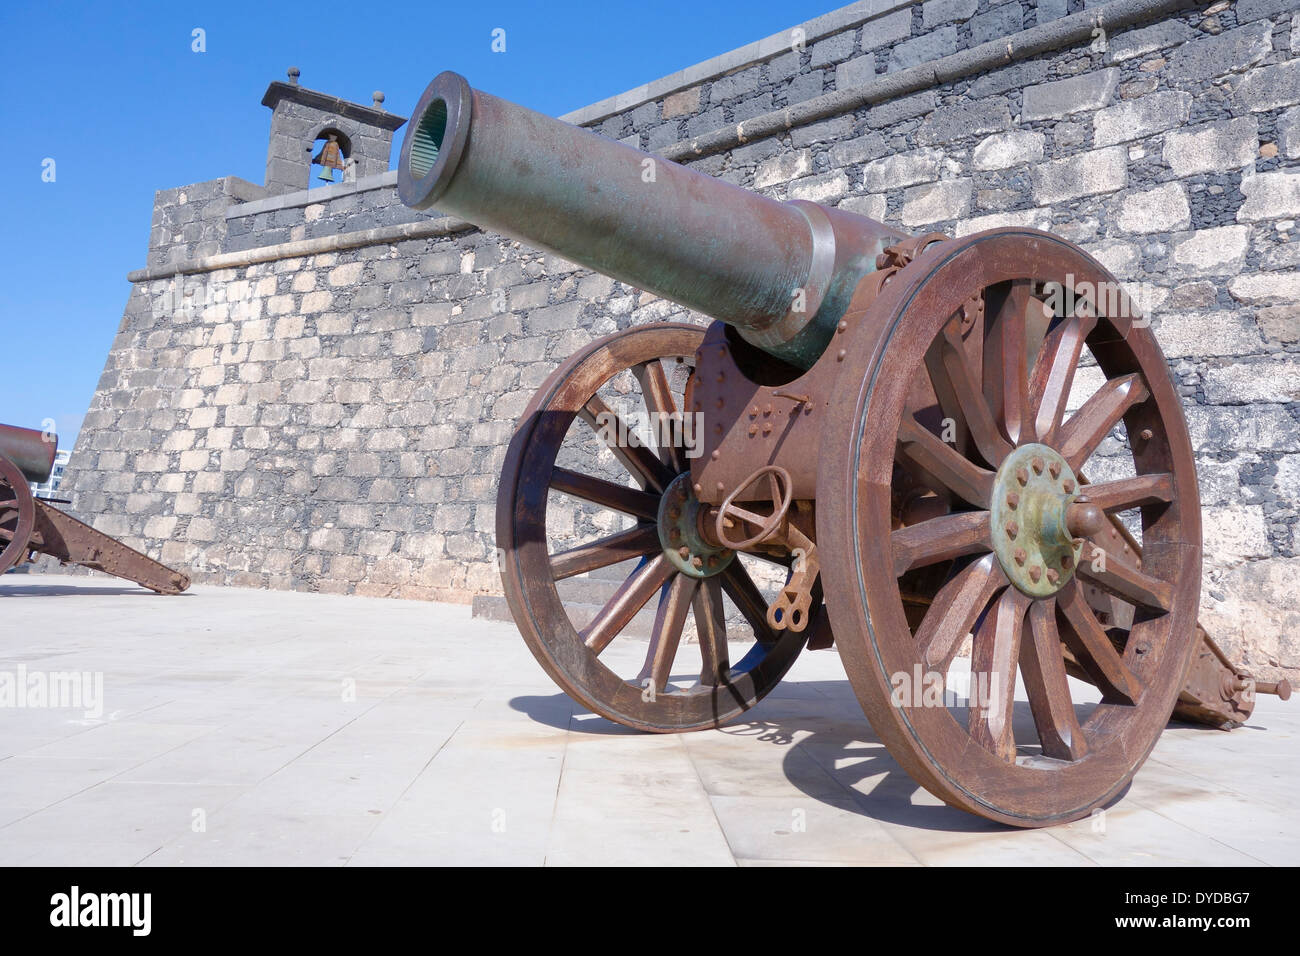 Spanien, Lanzarote, Arrecife. Kanone außerhalb der Mauern der das Castillo de San Gabriel (San Gabriel Schloss) Stockfoto